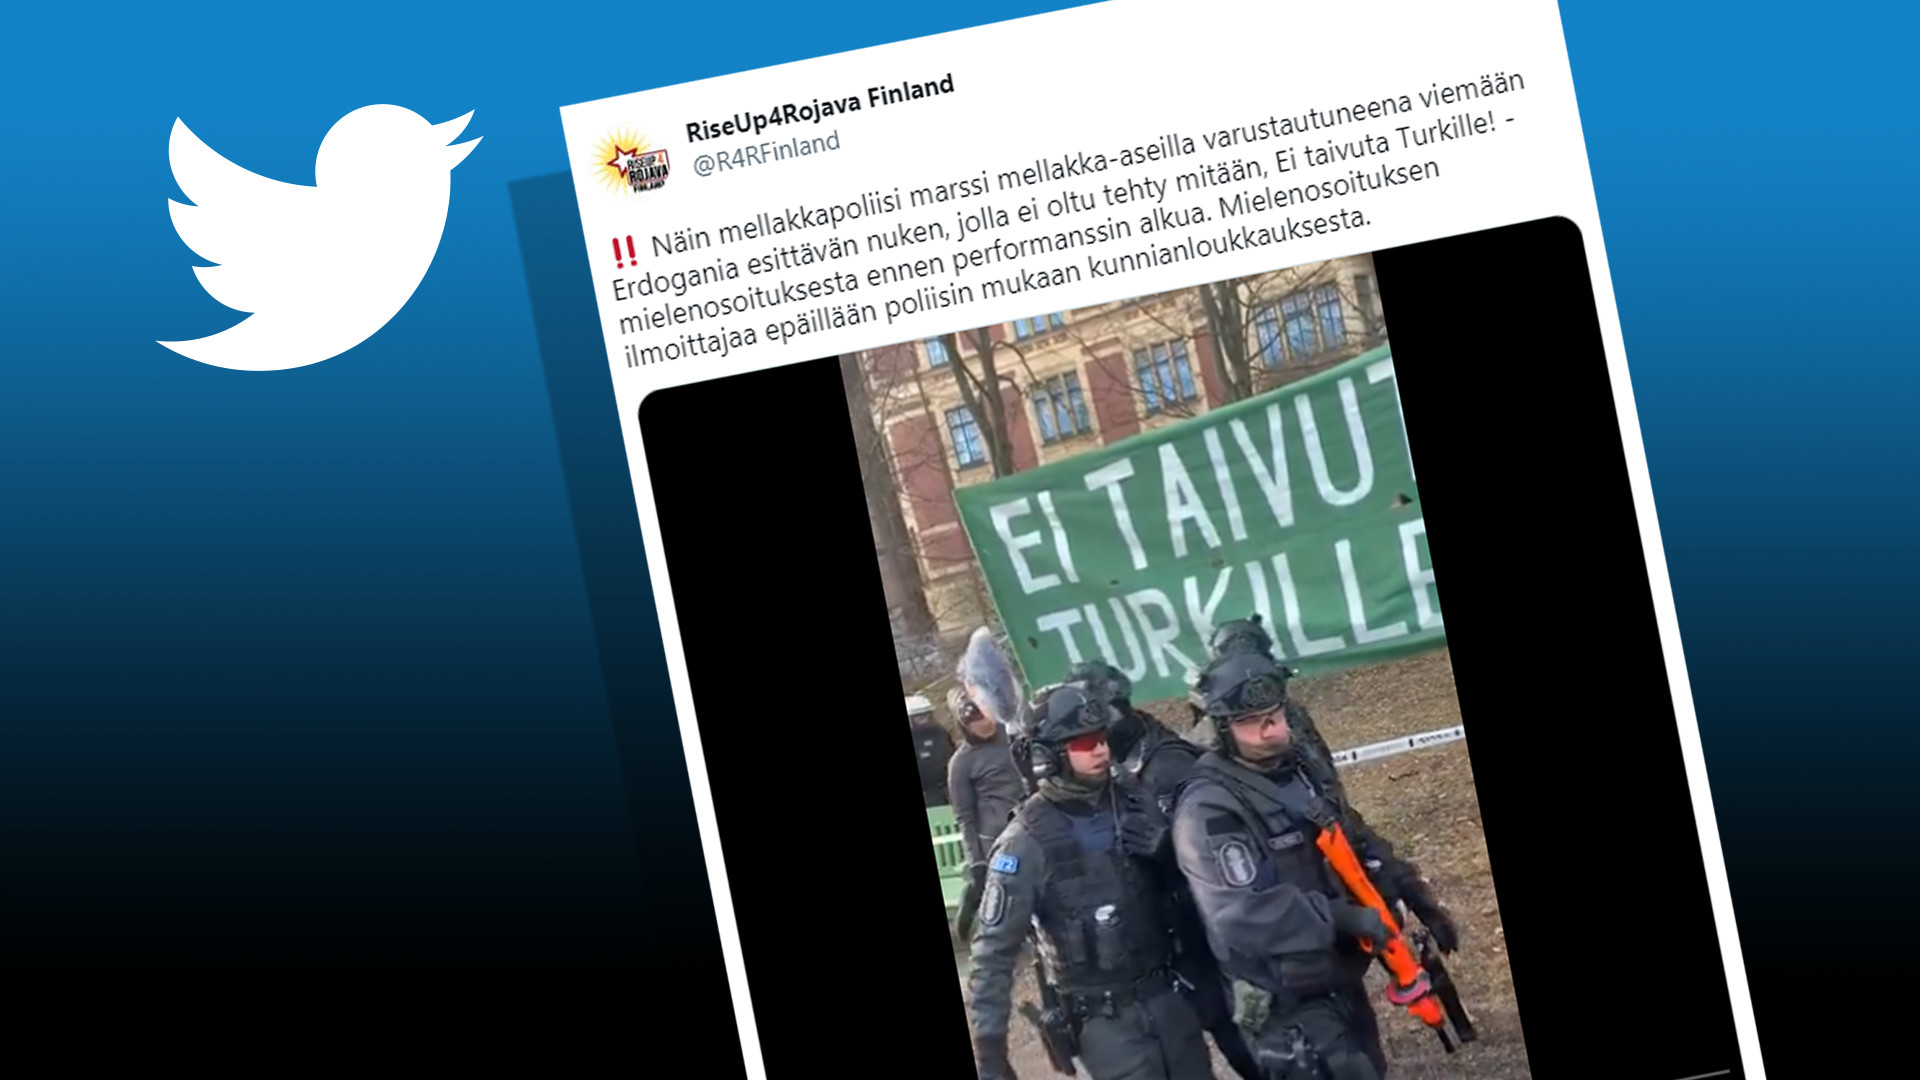 Polis mengeluarkan figura Erdogan daripada demonstrasi Helsinki